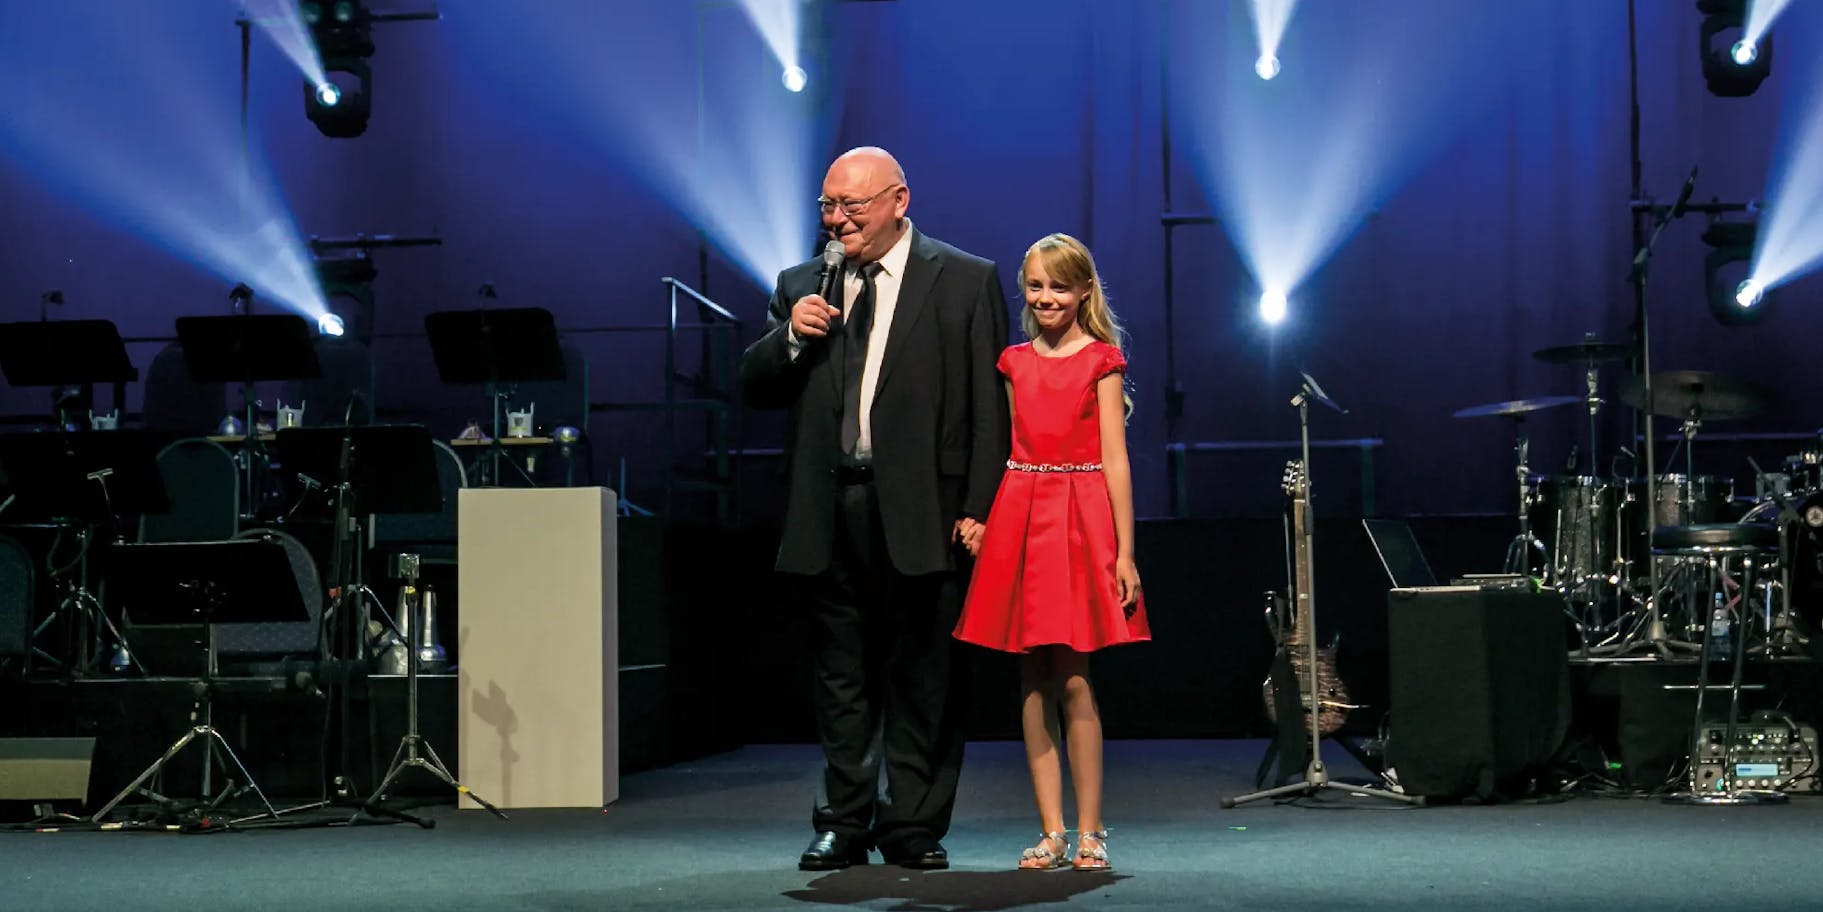 Gehard Schubert hät eine Rede auf der Bühne eines corporate events, neben ihm steht ein Mädchen in einem roten Kleid.